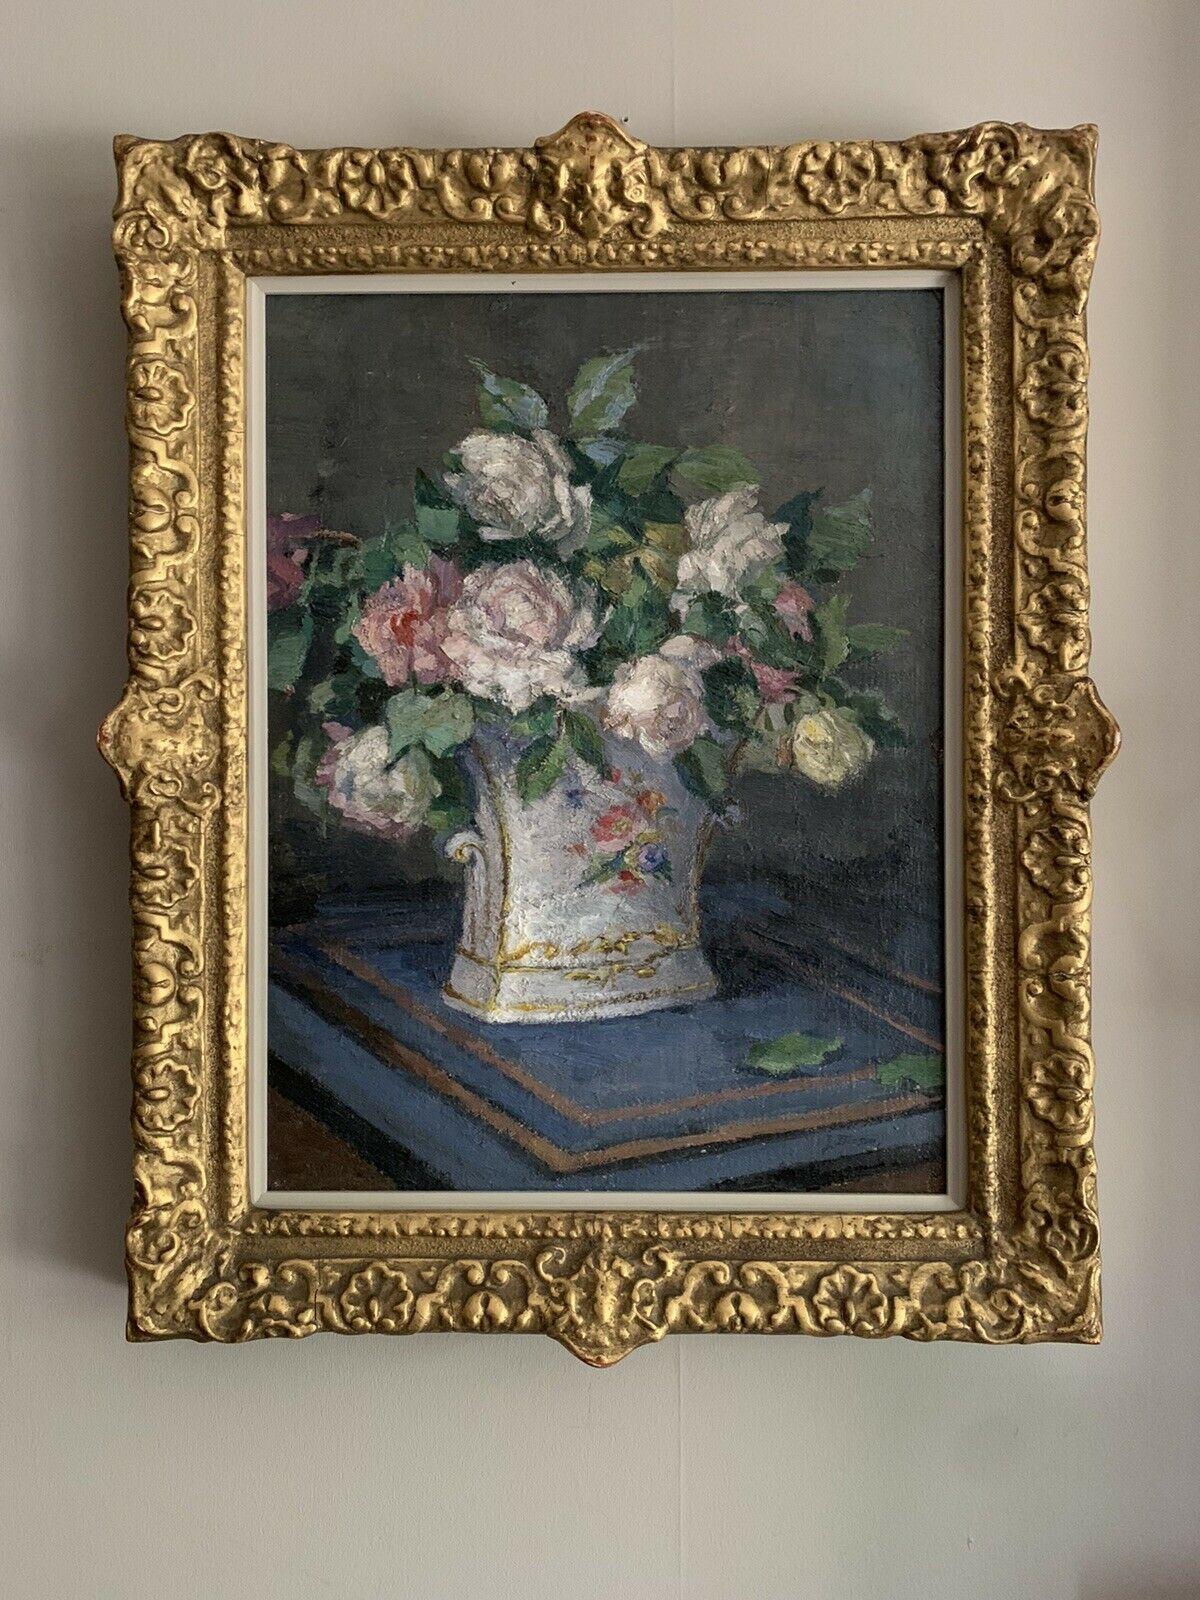 HUILE IMPRESSIONNISTE ANGLAISE DU DÉBUT DES ANNÉES 1900 - NATURE MORTE AUX ROSES DANS UN VASE ORNÉ - Painting de J. MASON